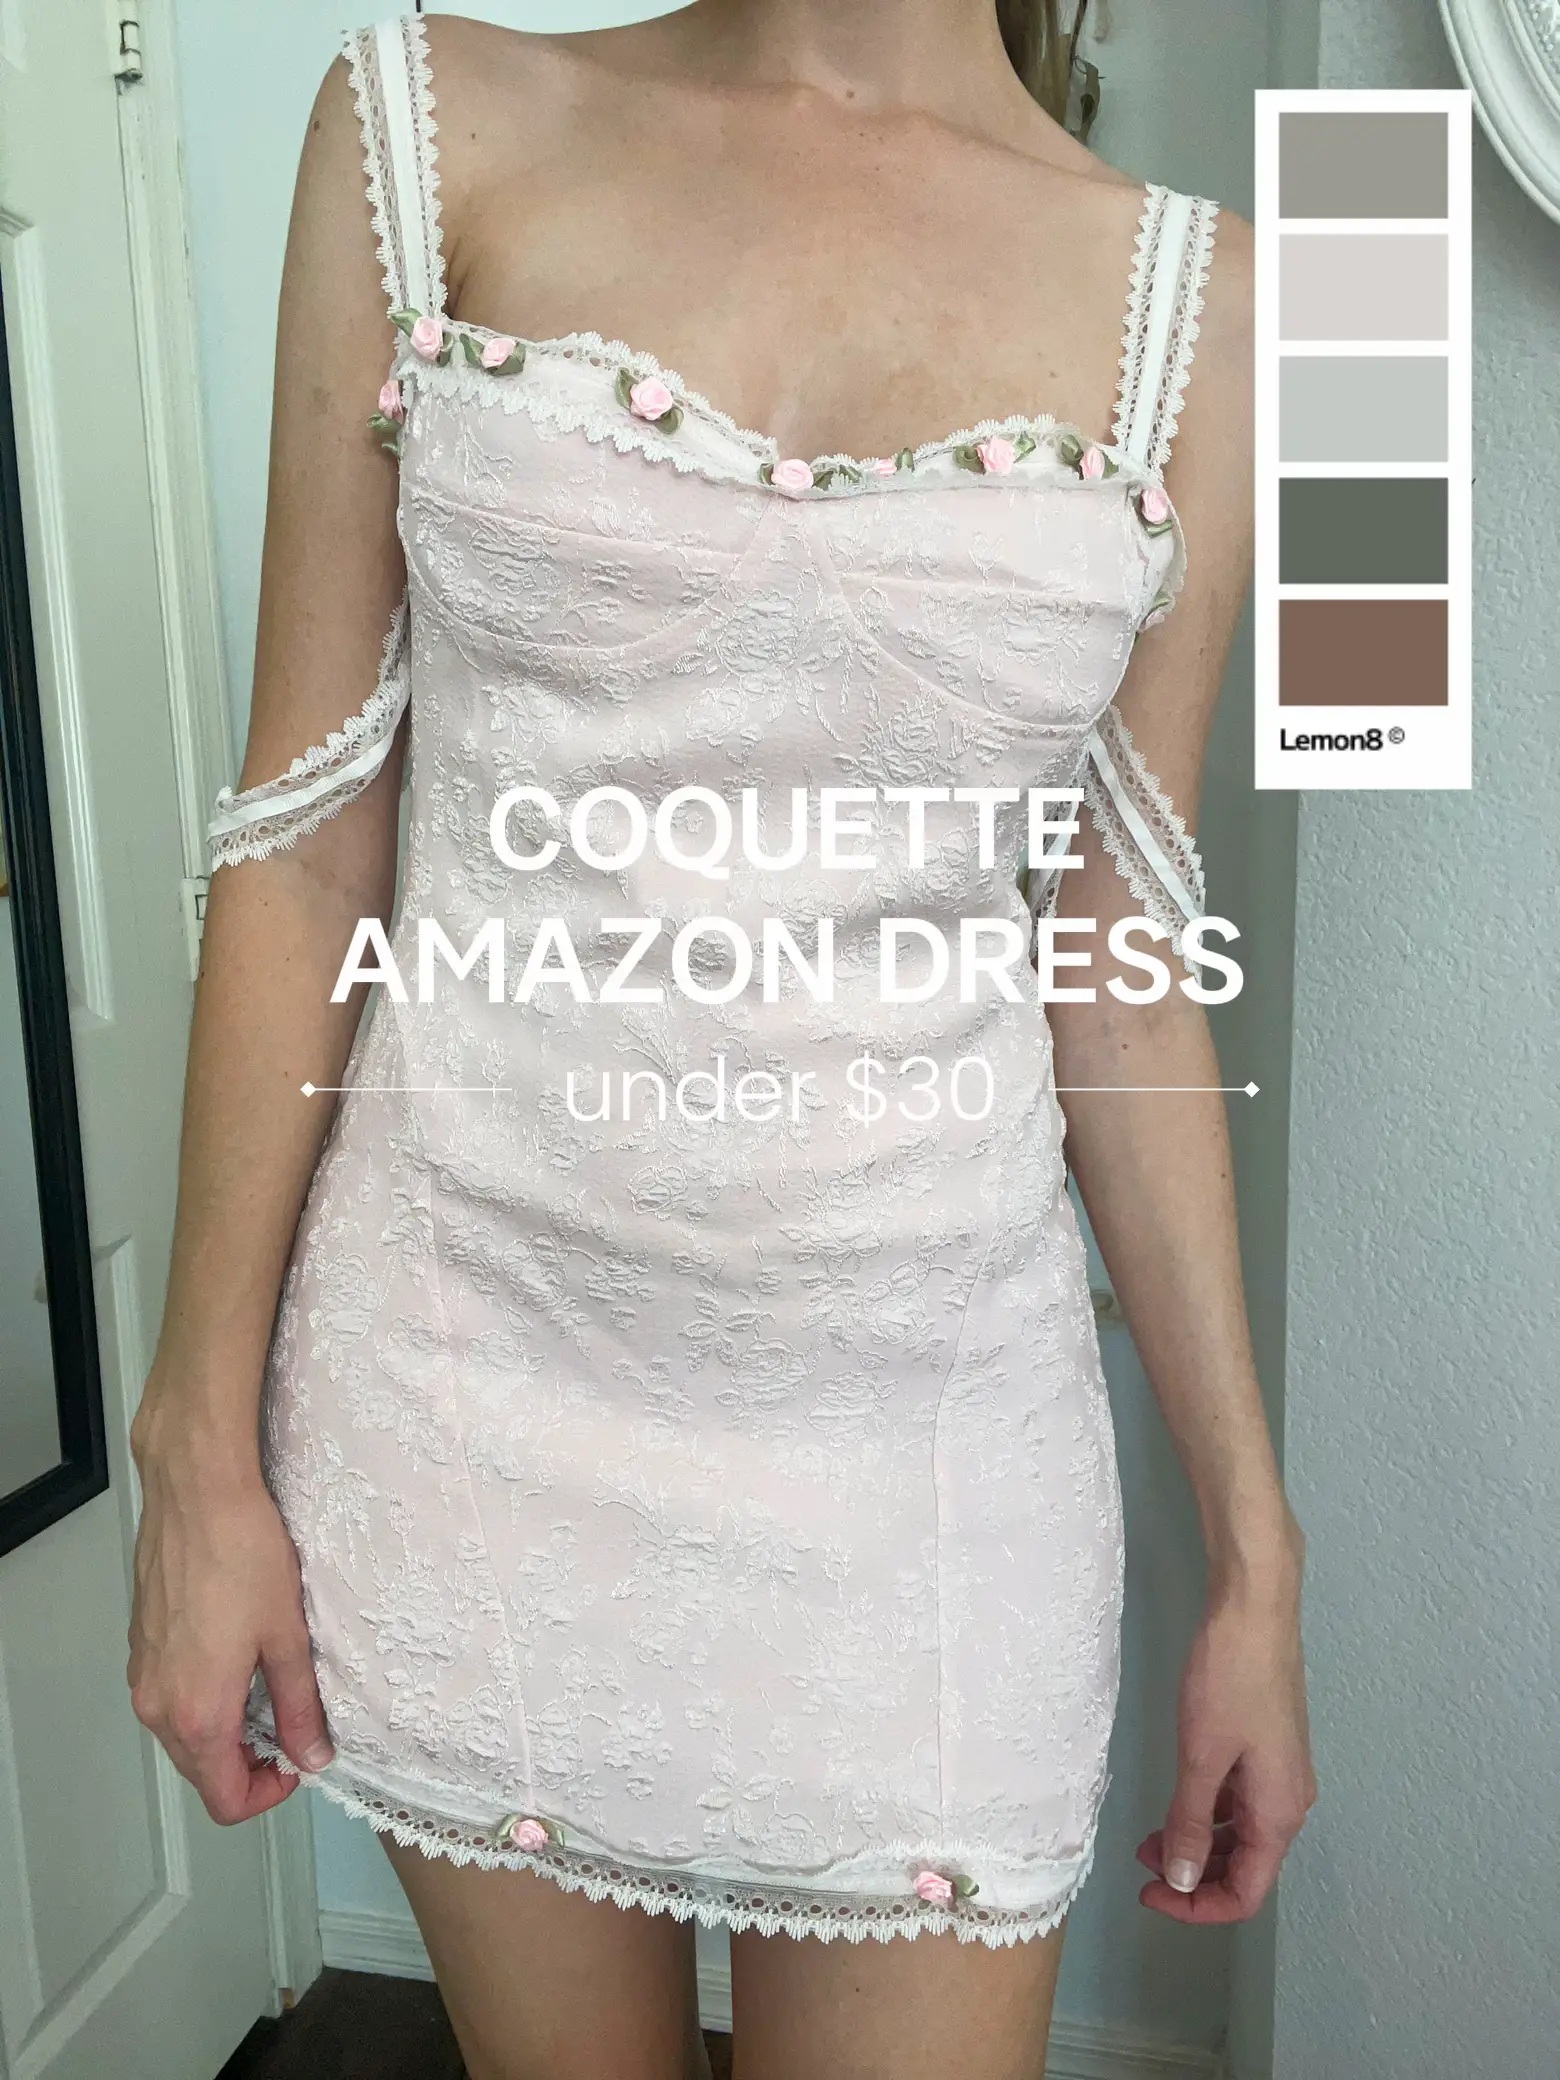 Coquette fashion trend - Lemon8 Search